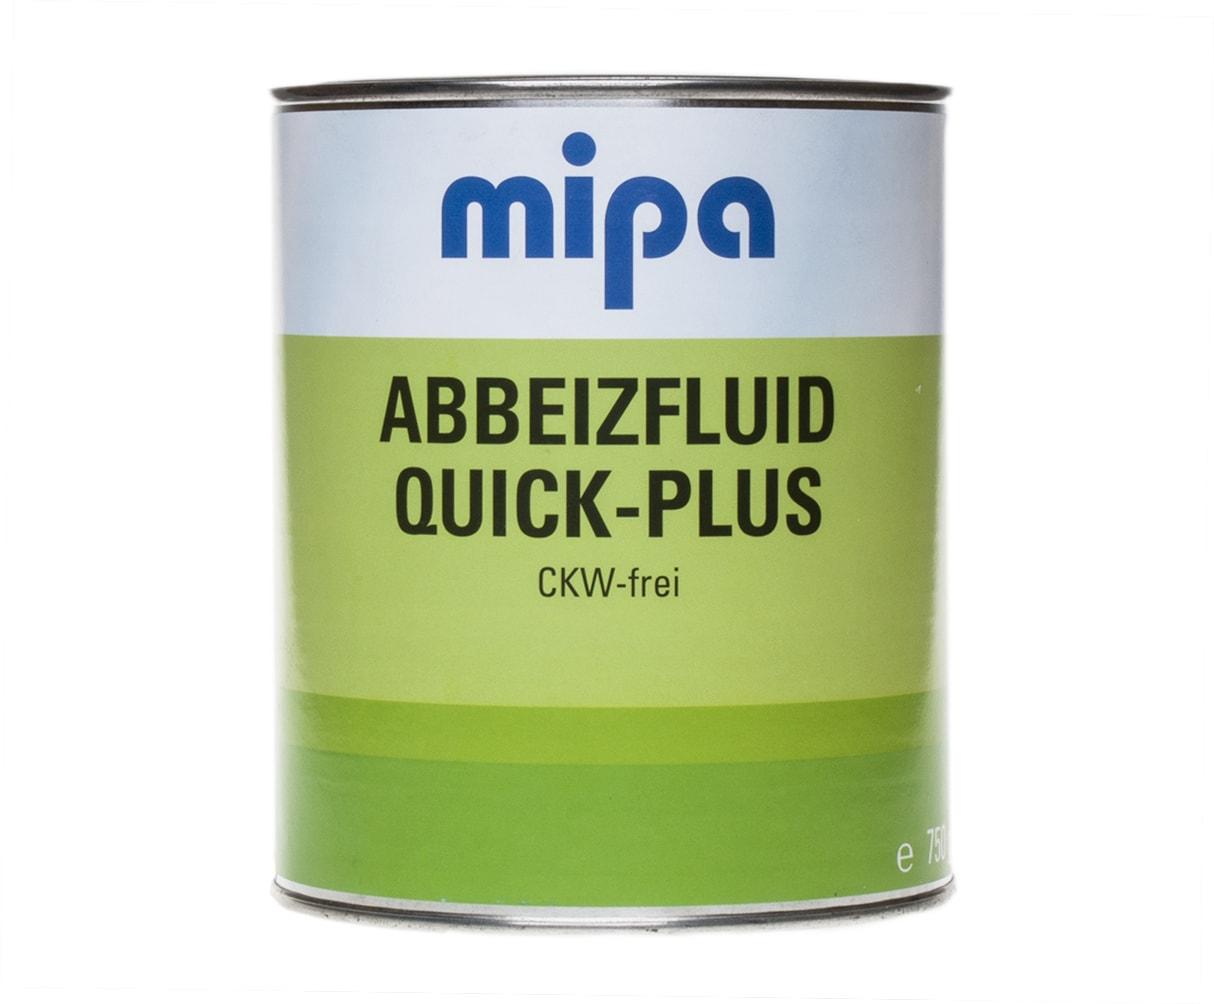 MIPA 699030002 Abbeizfluid Quick-Plus CKW-frei Растворитель для удаления краски 750г